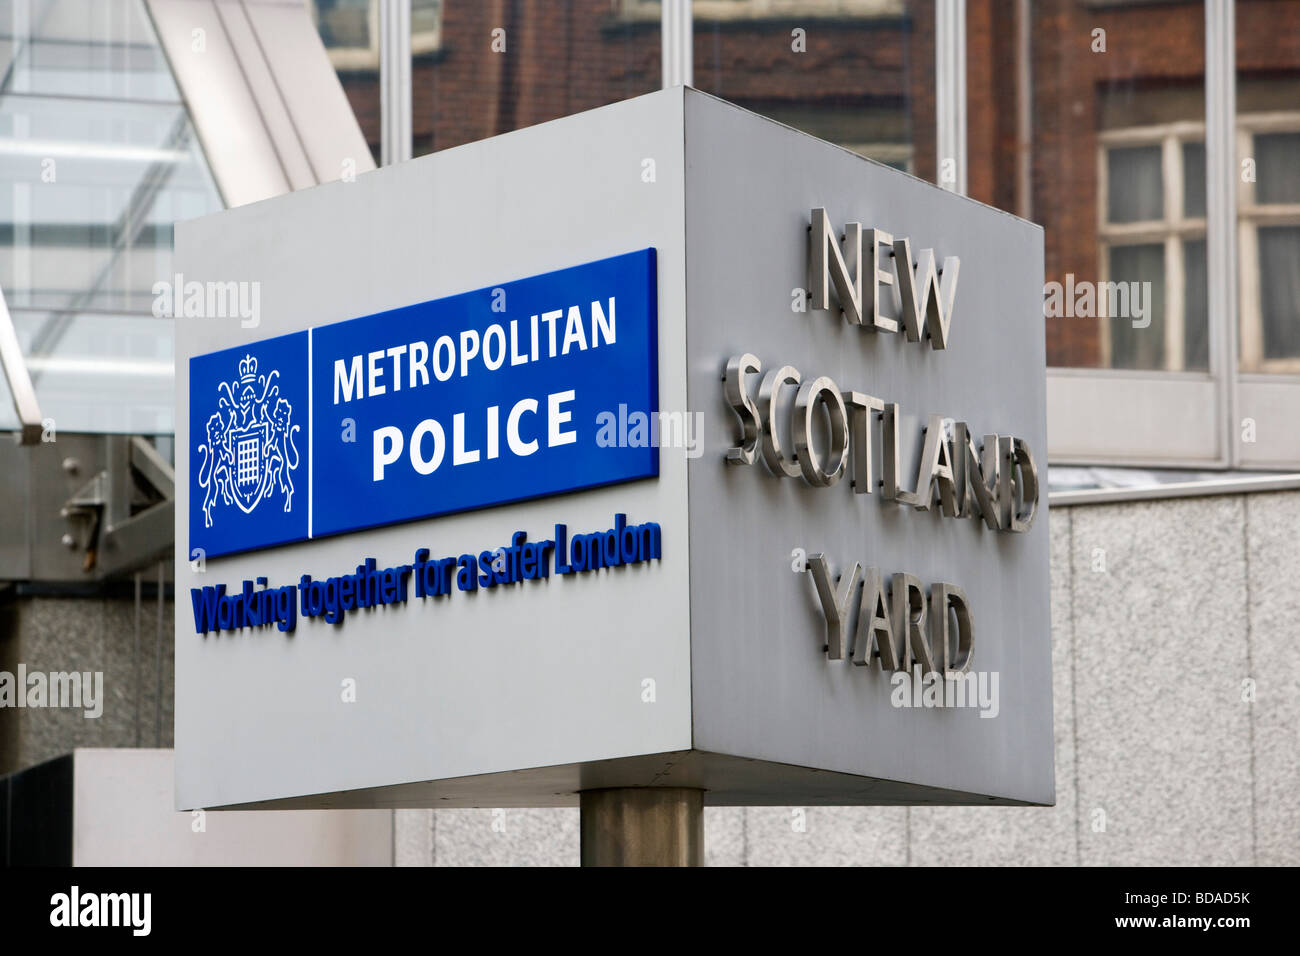 Metropolitan Police unterzeichnen New Scotland Yard London England Großbritannien Samstag, 4. Juli 2009 Stockfoto